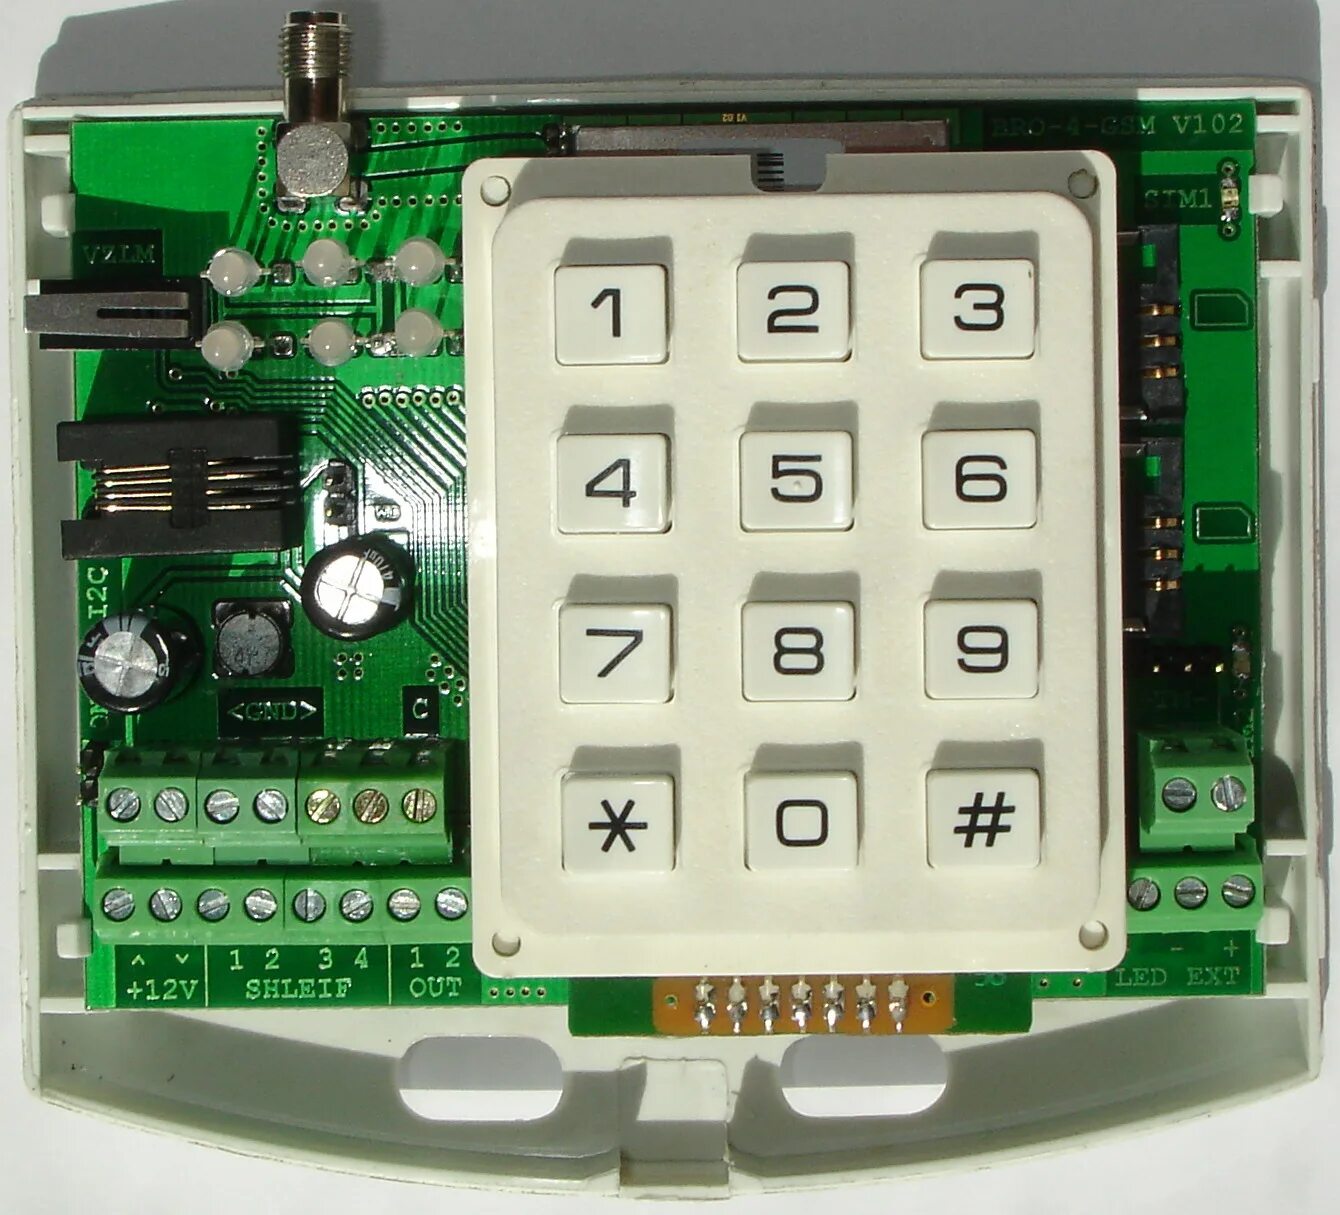 Бро 4 gsm ethernet. Блок радиоканальный объектовый бро-4 GSM. РСПИ струна 5 бро 4 GSM. Струна бро-4 GSM (блок радиоканальный объектовый). РСПИ струна-5 бро-4.